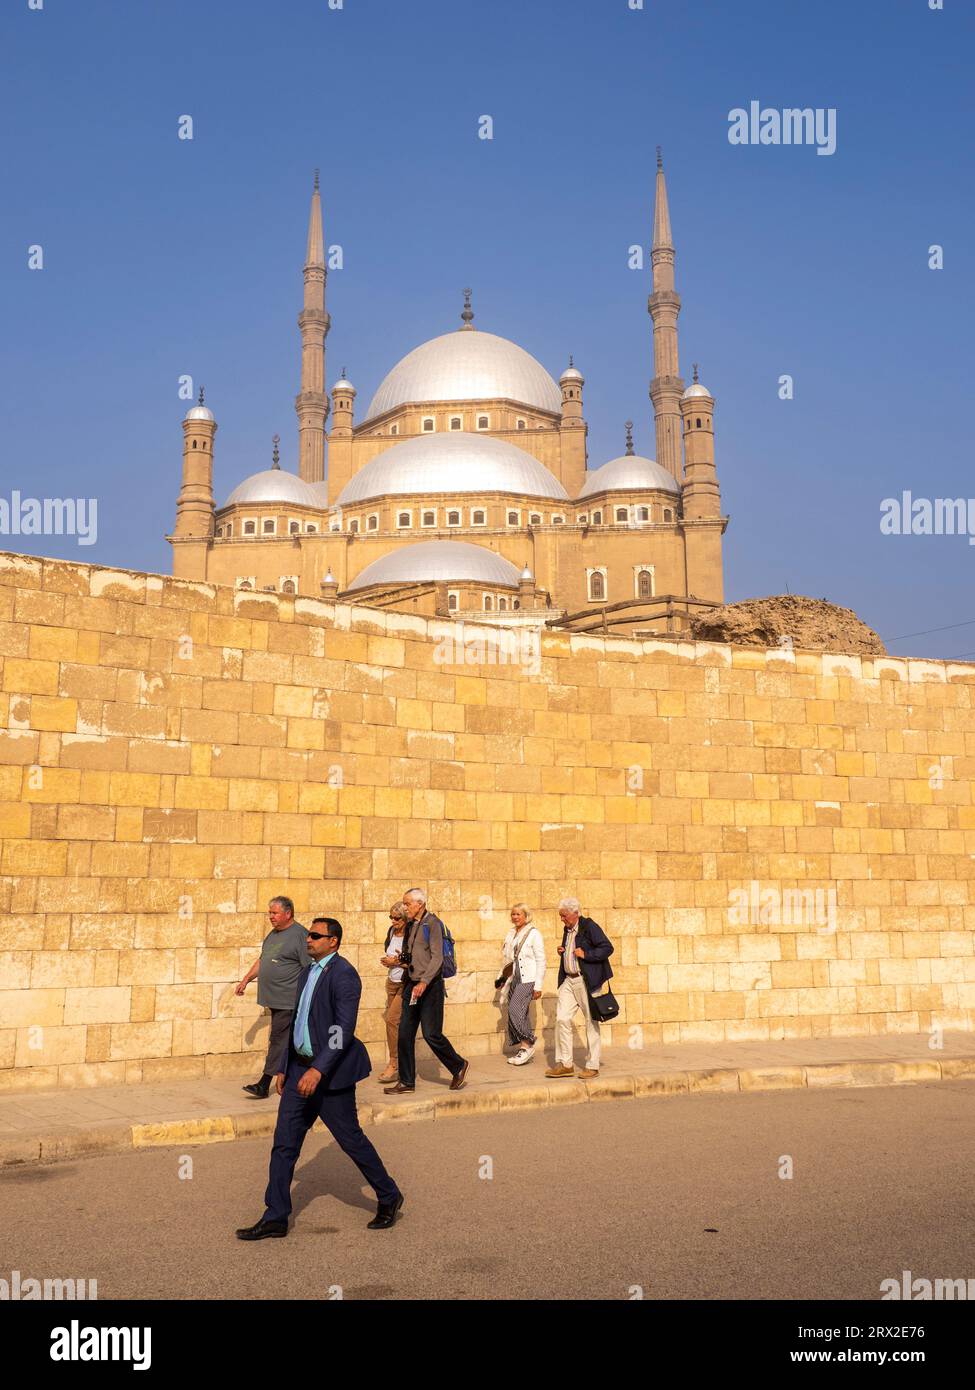 La mosquée Muhammad Ali de l'ère ottomane, achevée en 1848, surplombant le Caire du sommet de la Citadelle, le Caire, l'Égypte, l'Afrique du Nord, l'Afrique Banque D'Images